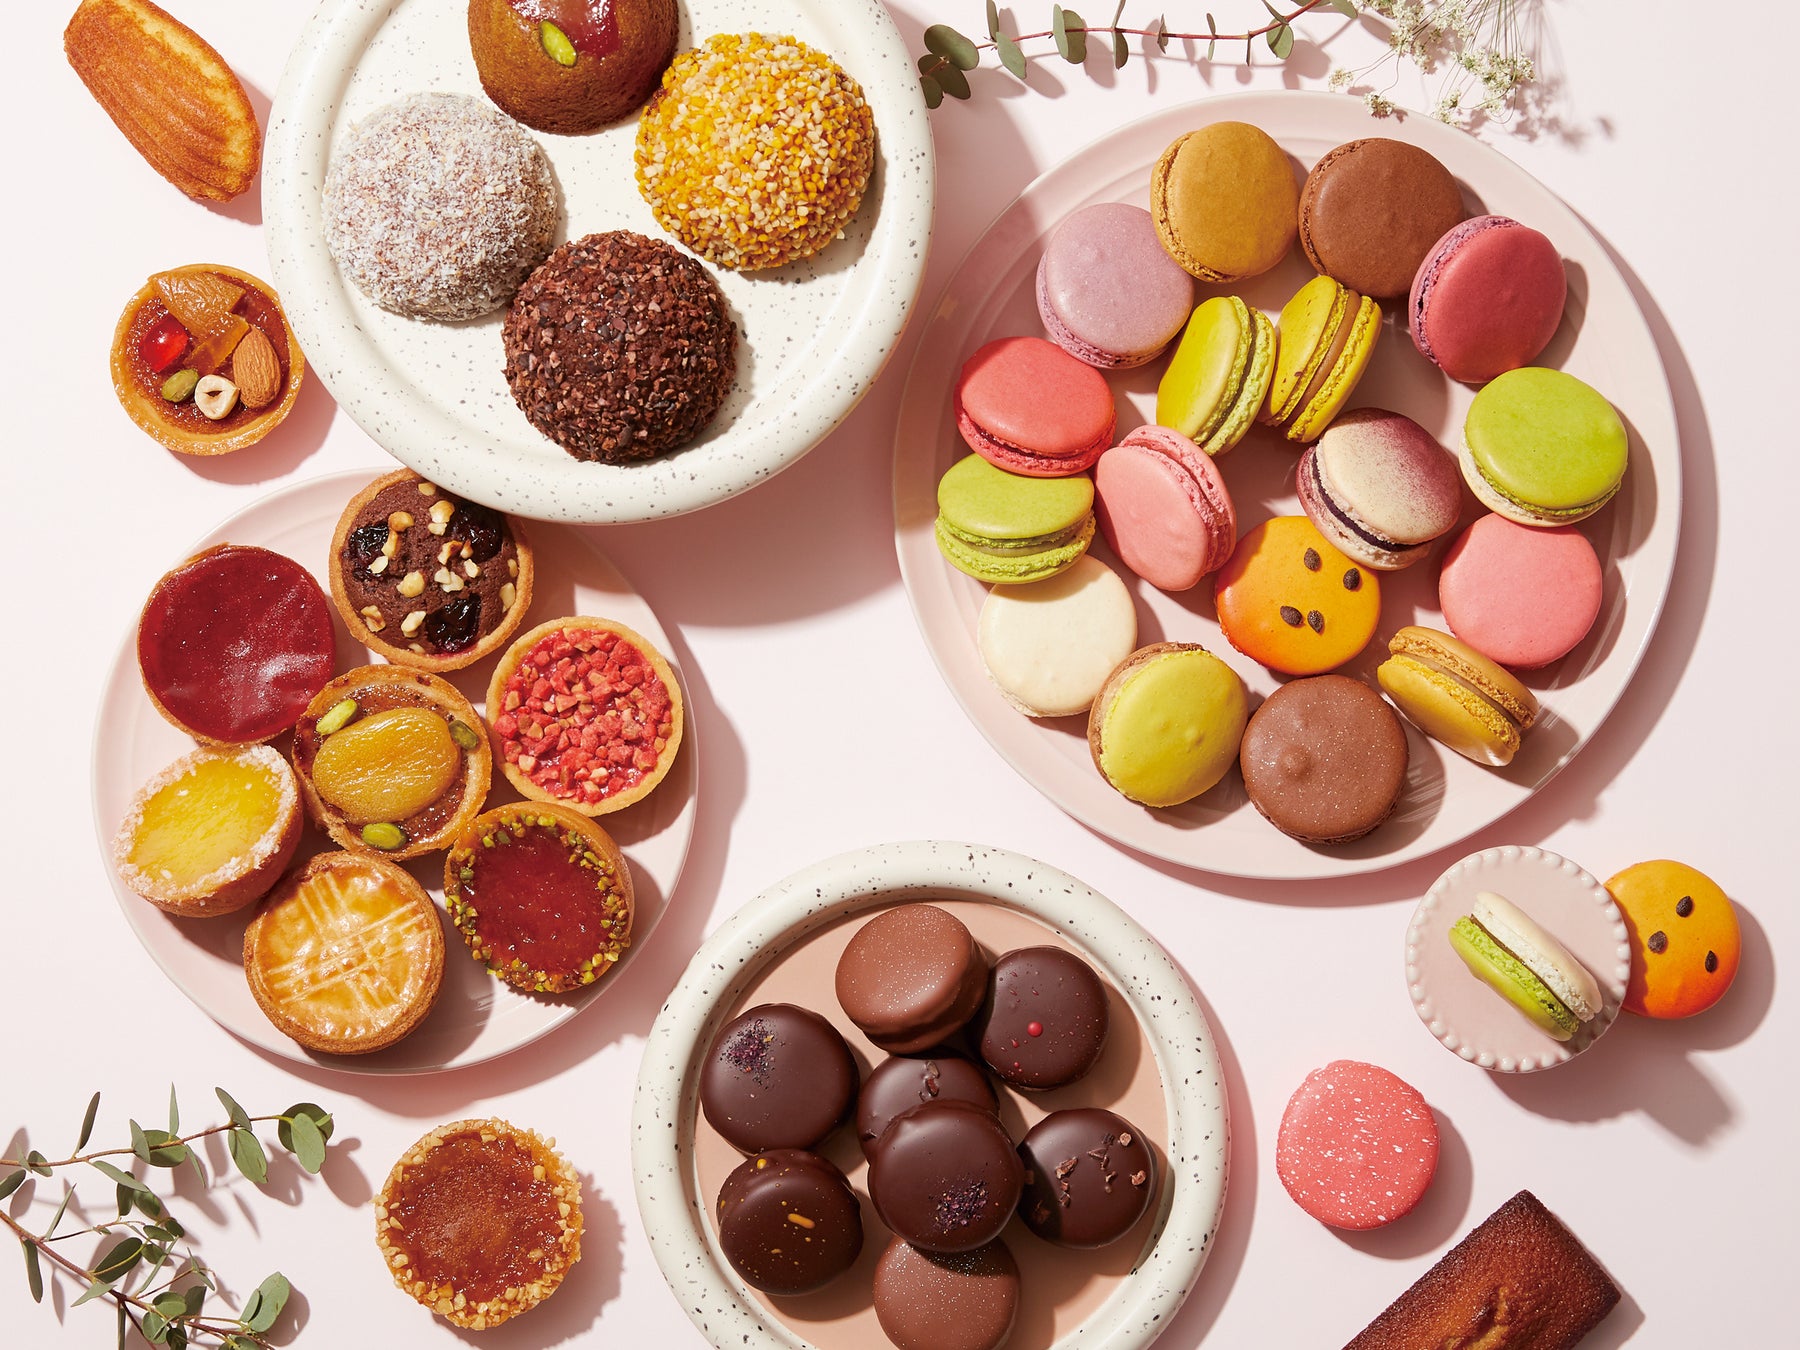 ブルボン、チョコレートづくしのお菓子アイス
「ルマンドアイスラテショコラ」を4月4日(月)に新発売！